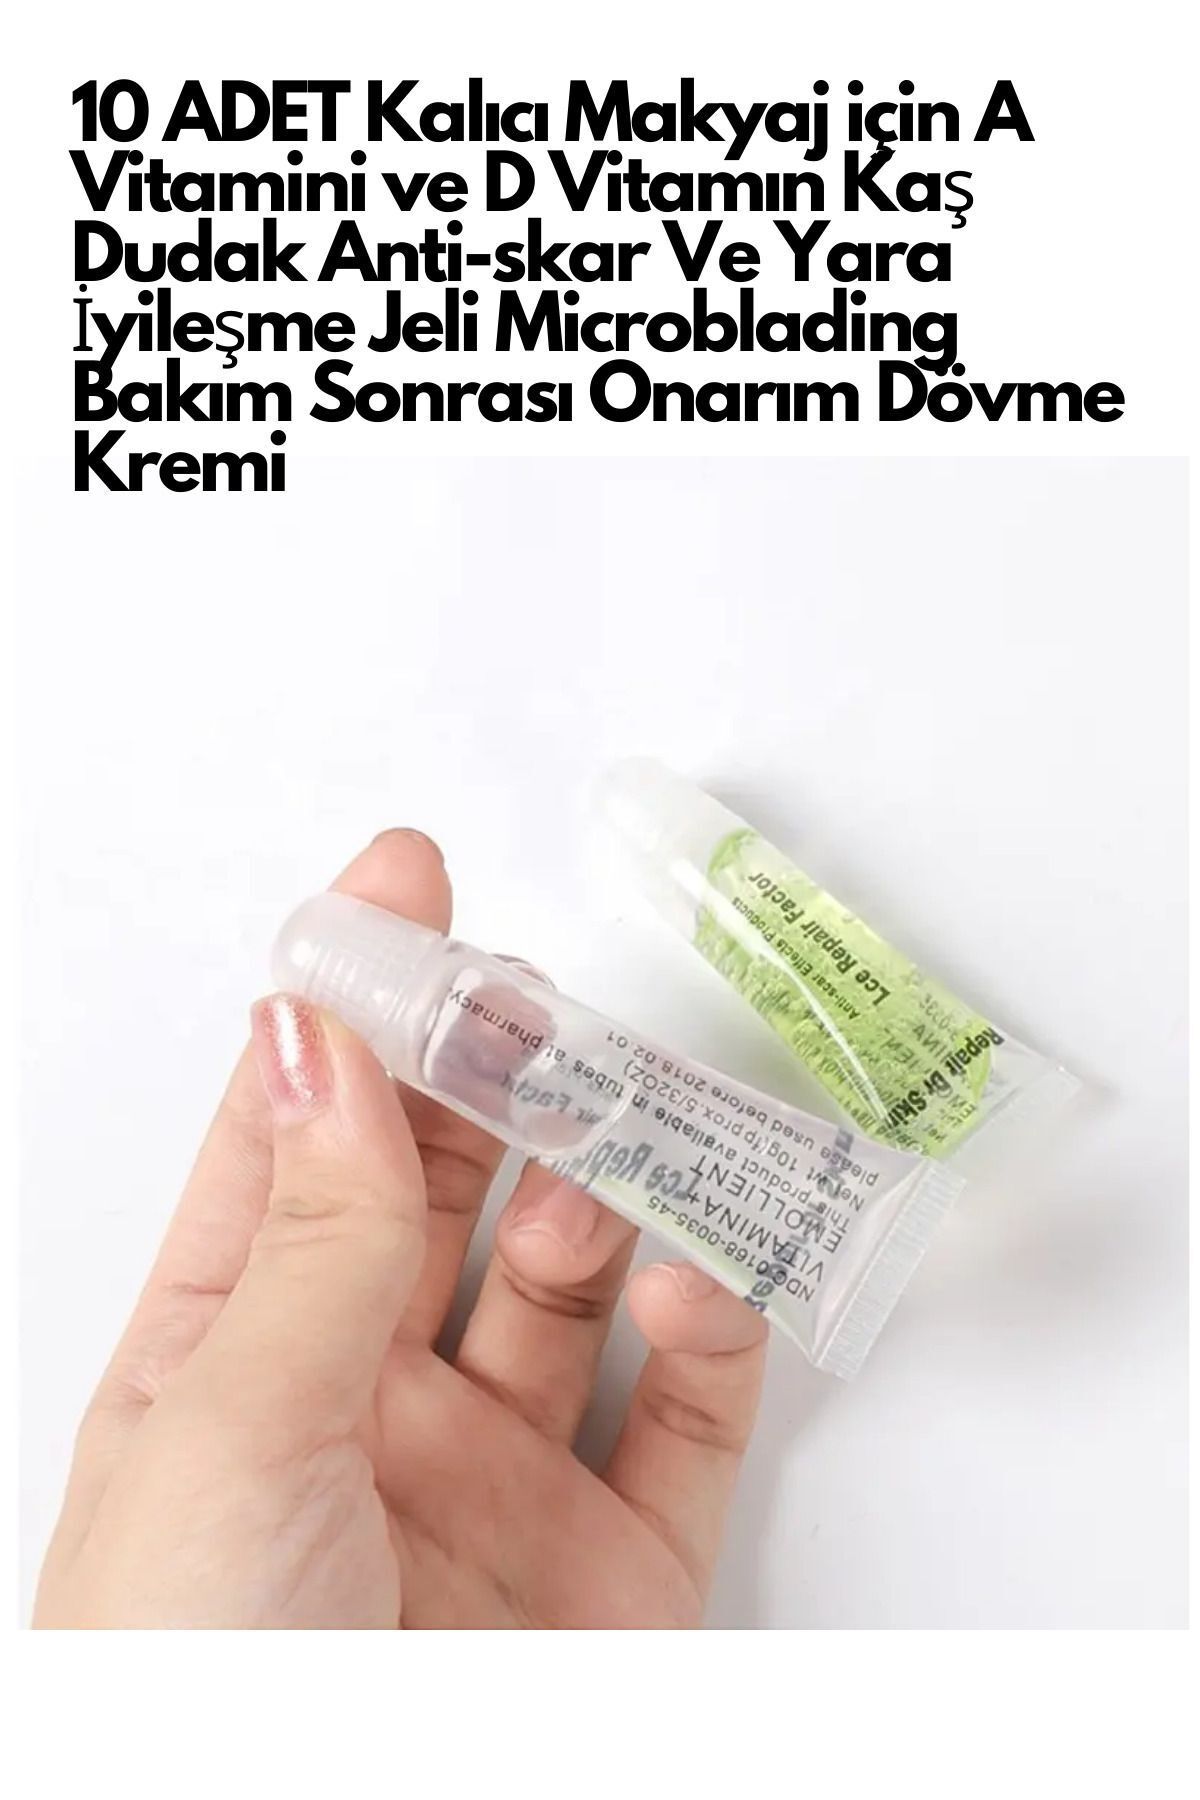 YAYOGE Kalıcı Makyaj A-D Vitamini Kaş Dudak İyileşme Jeli Microblading Sonrası Onarım Dövme Kremi 10 ADET